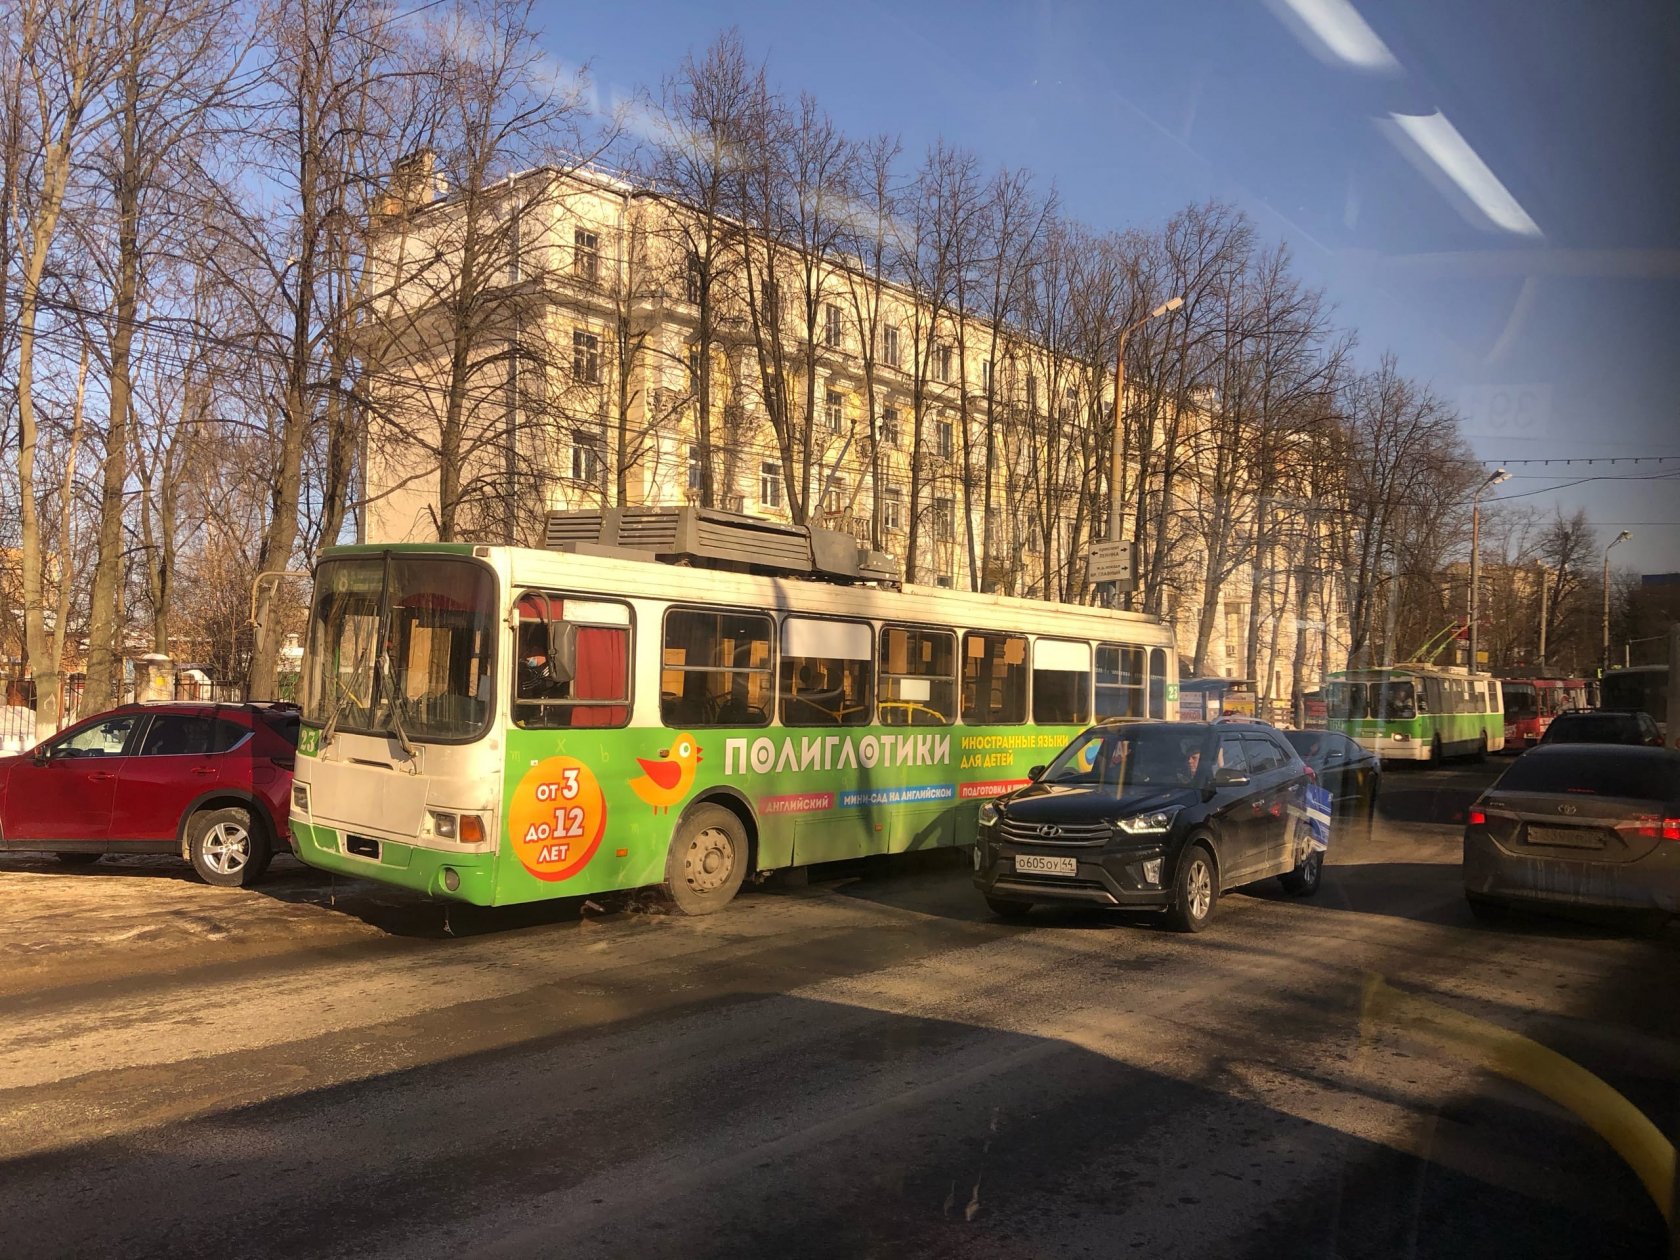 Транспортный коллапс в Ярославле: в городе встали троллейбусы | 12.03.21 |  Яркуб